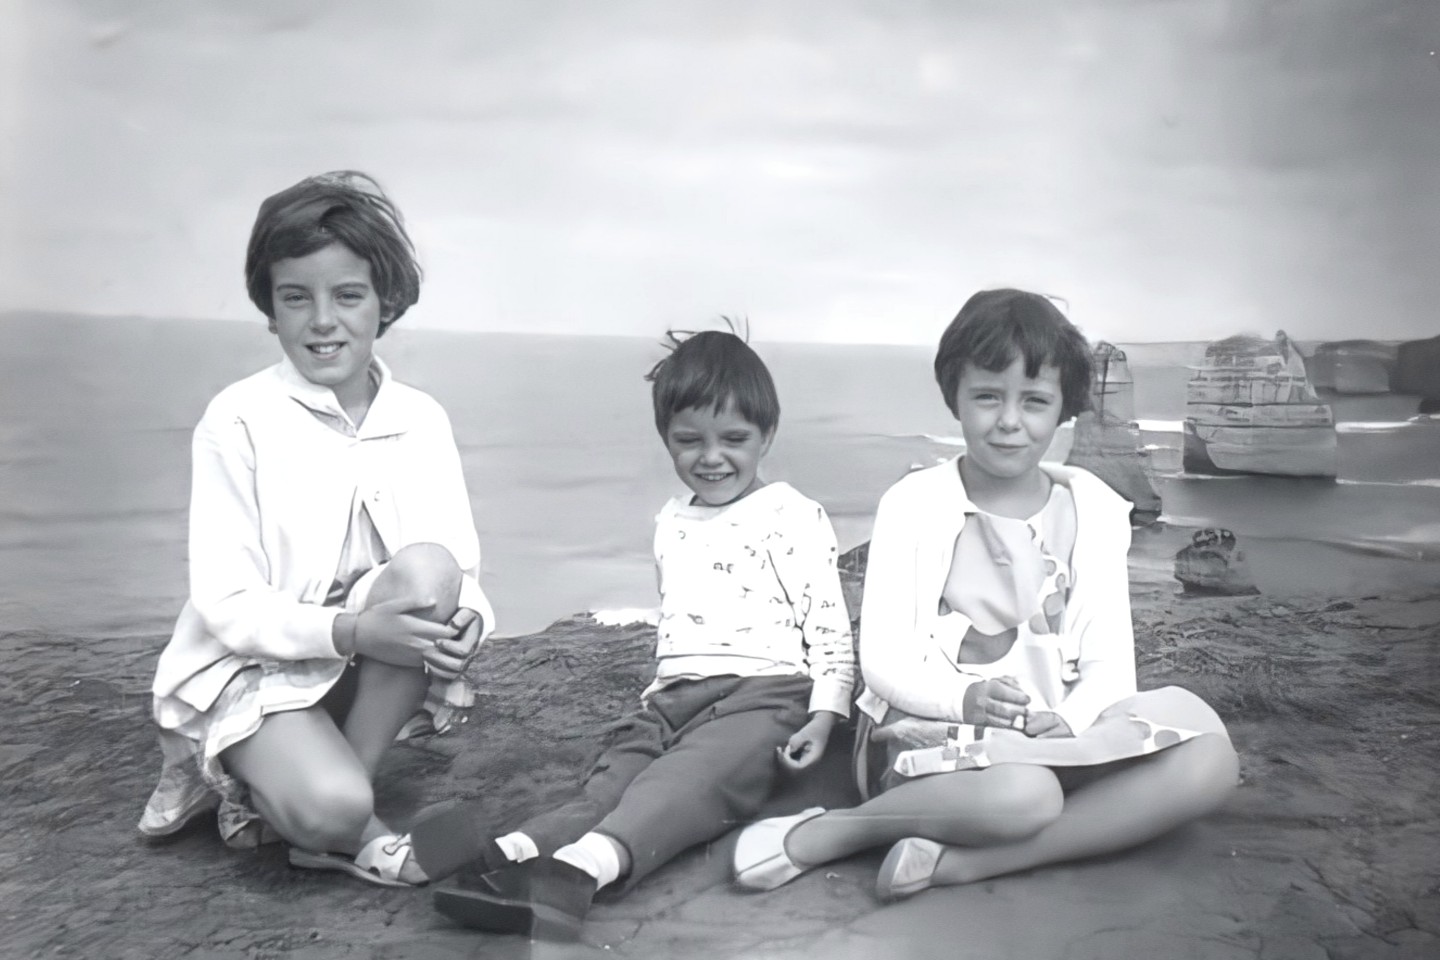 Джейн, Грант и Арнна Бомонт, сфотографированные во время семейной поездки к Двенадцати Апостолам в 1965 году недалеко от Порт-Кэмпбелла, Виктория, Австралия.